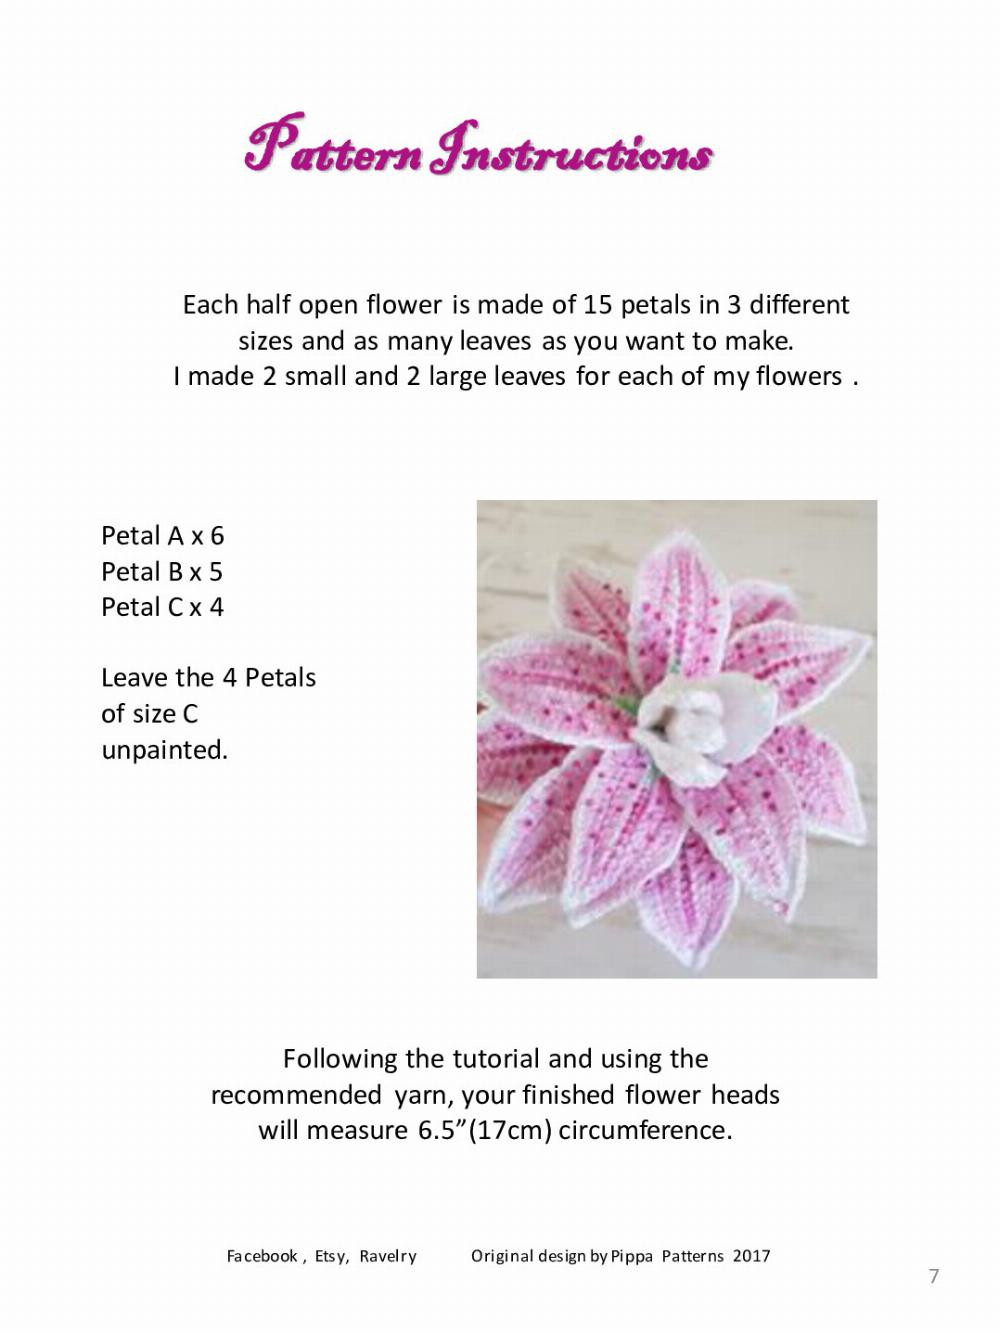 rose lily crochet pattern